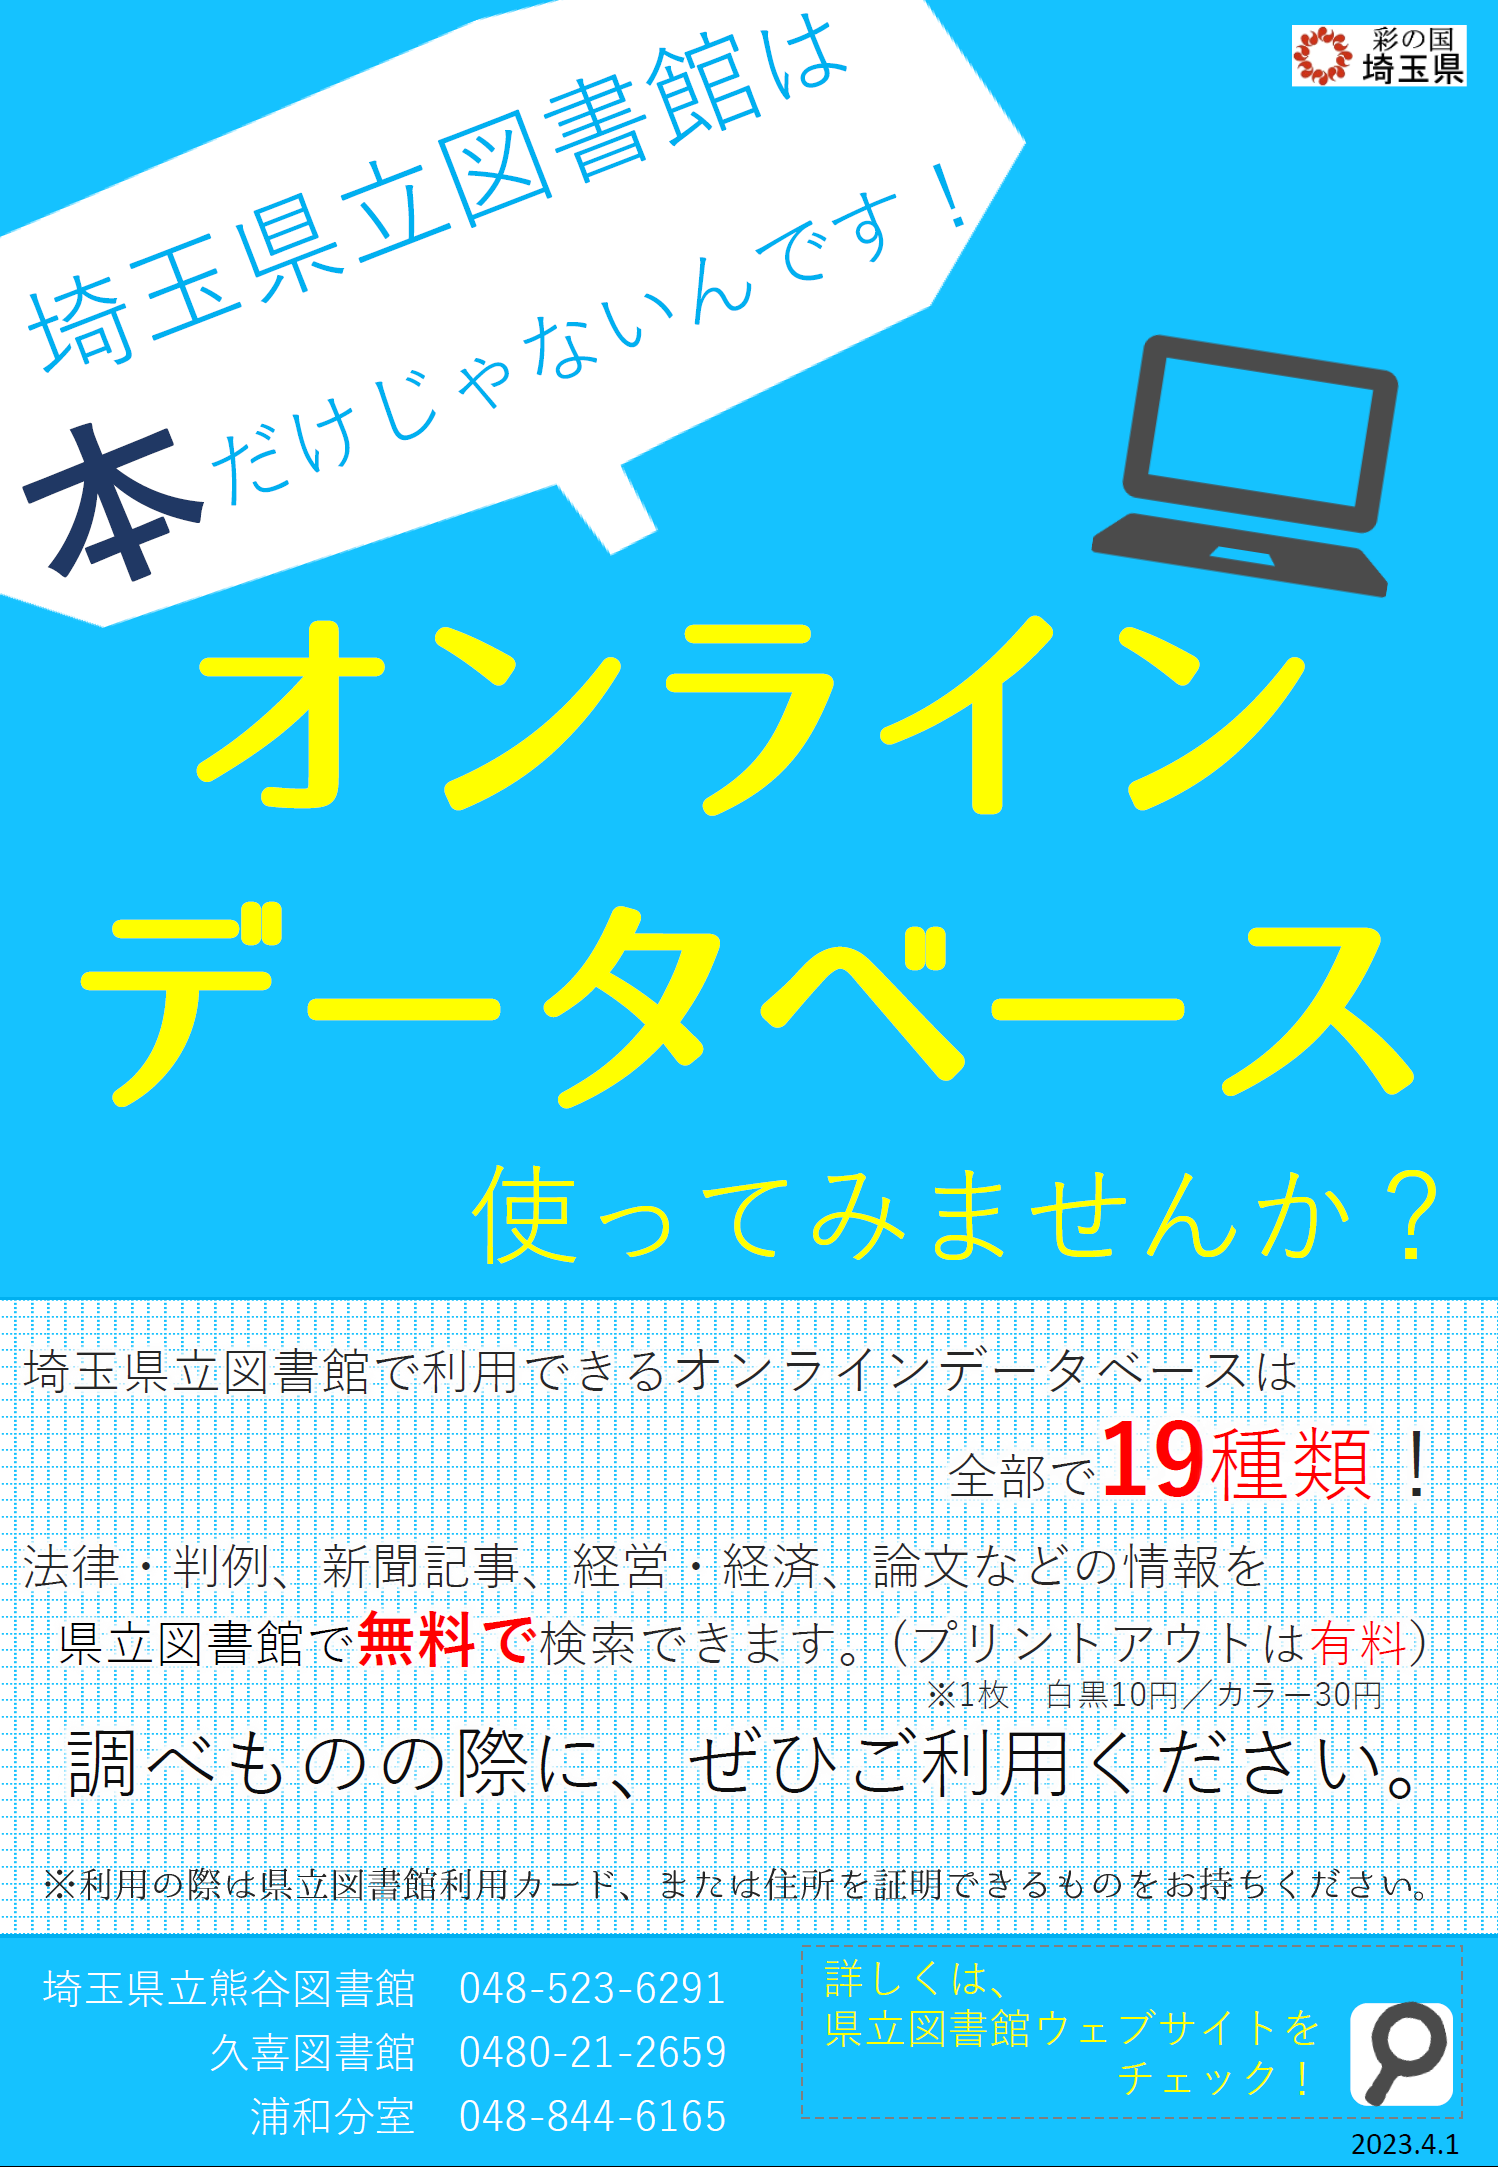 埼玉県立図書館オンラインデータベースのポスターです。